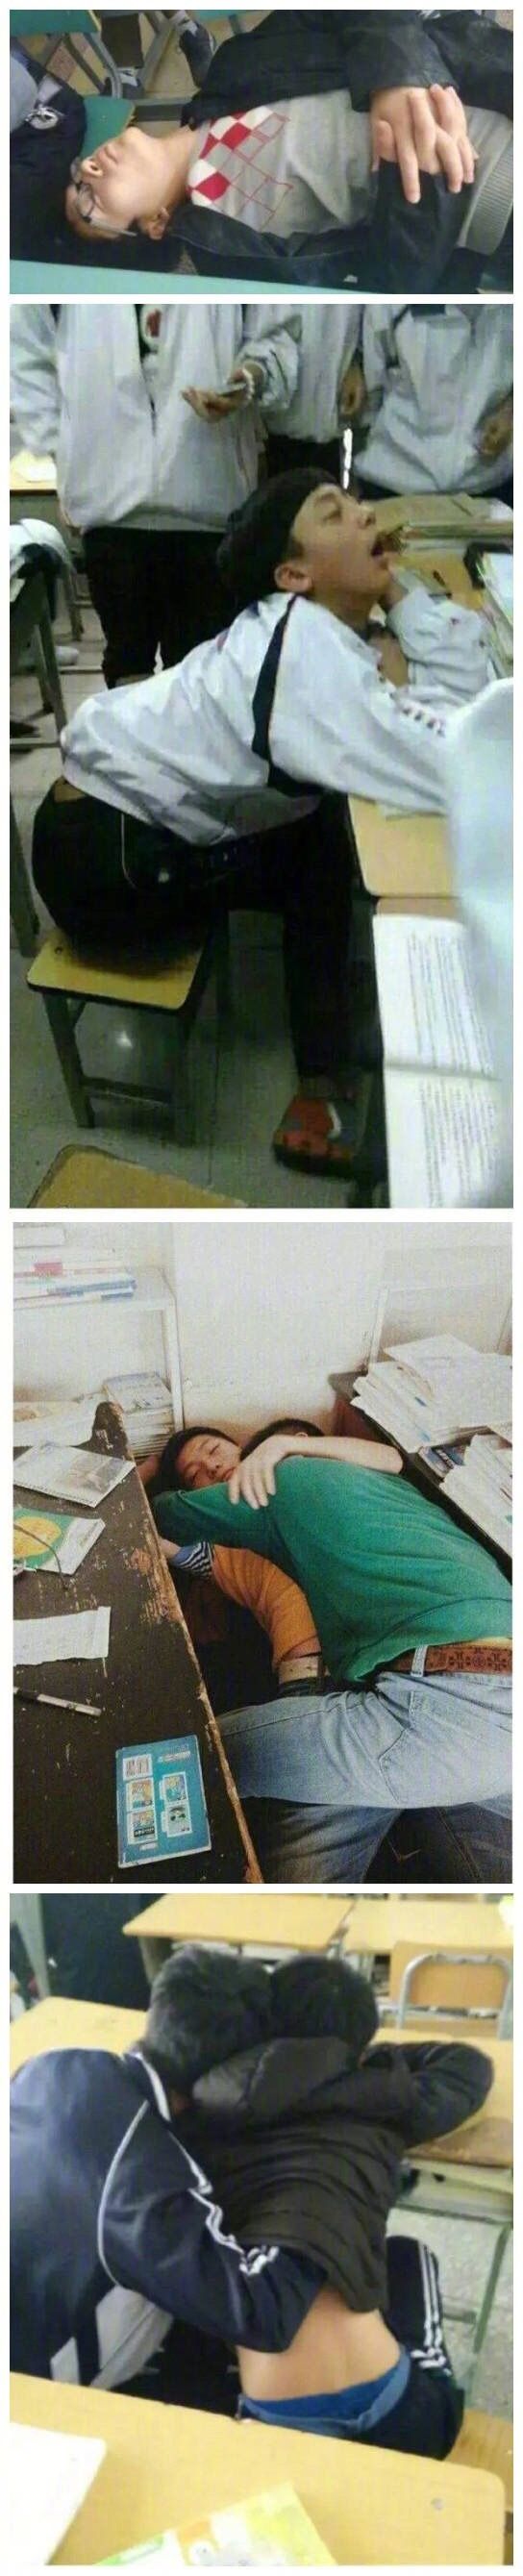 搞笑图片,班级同学的奇葩睡姿